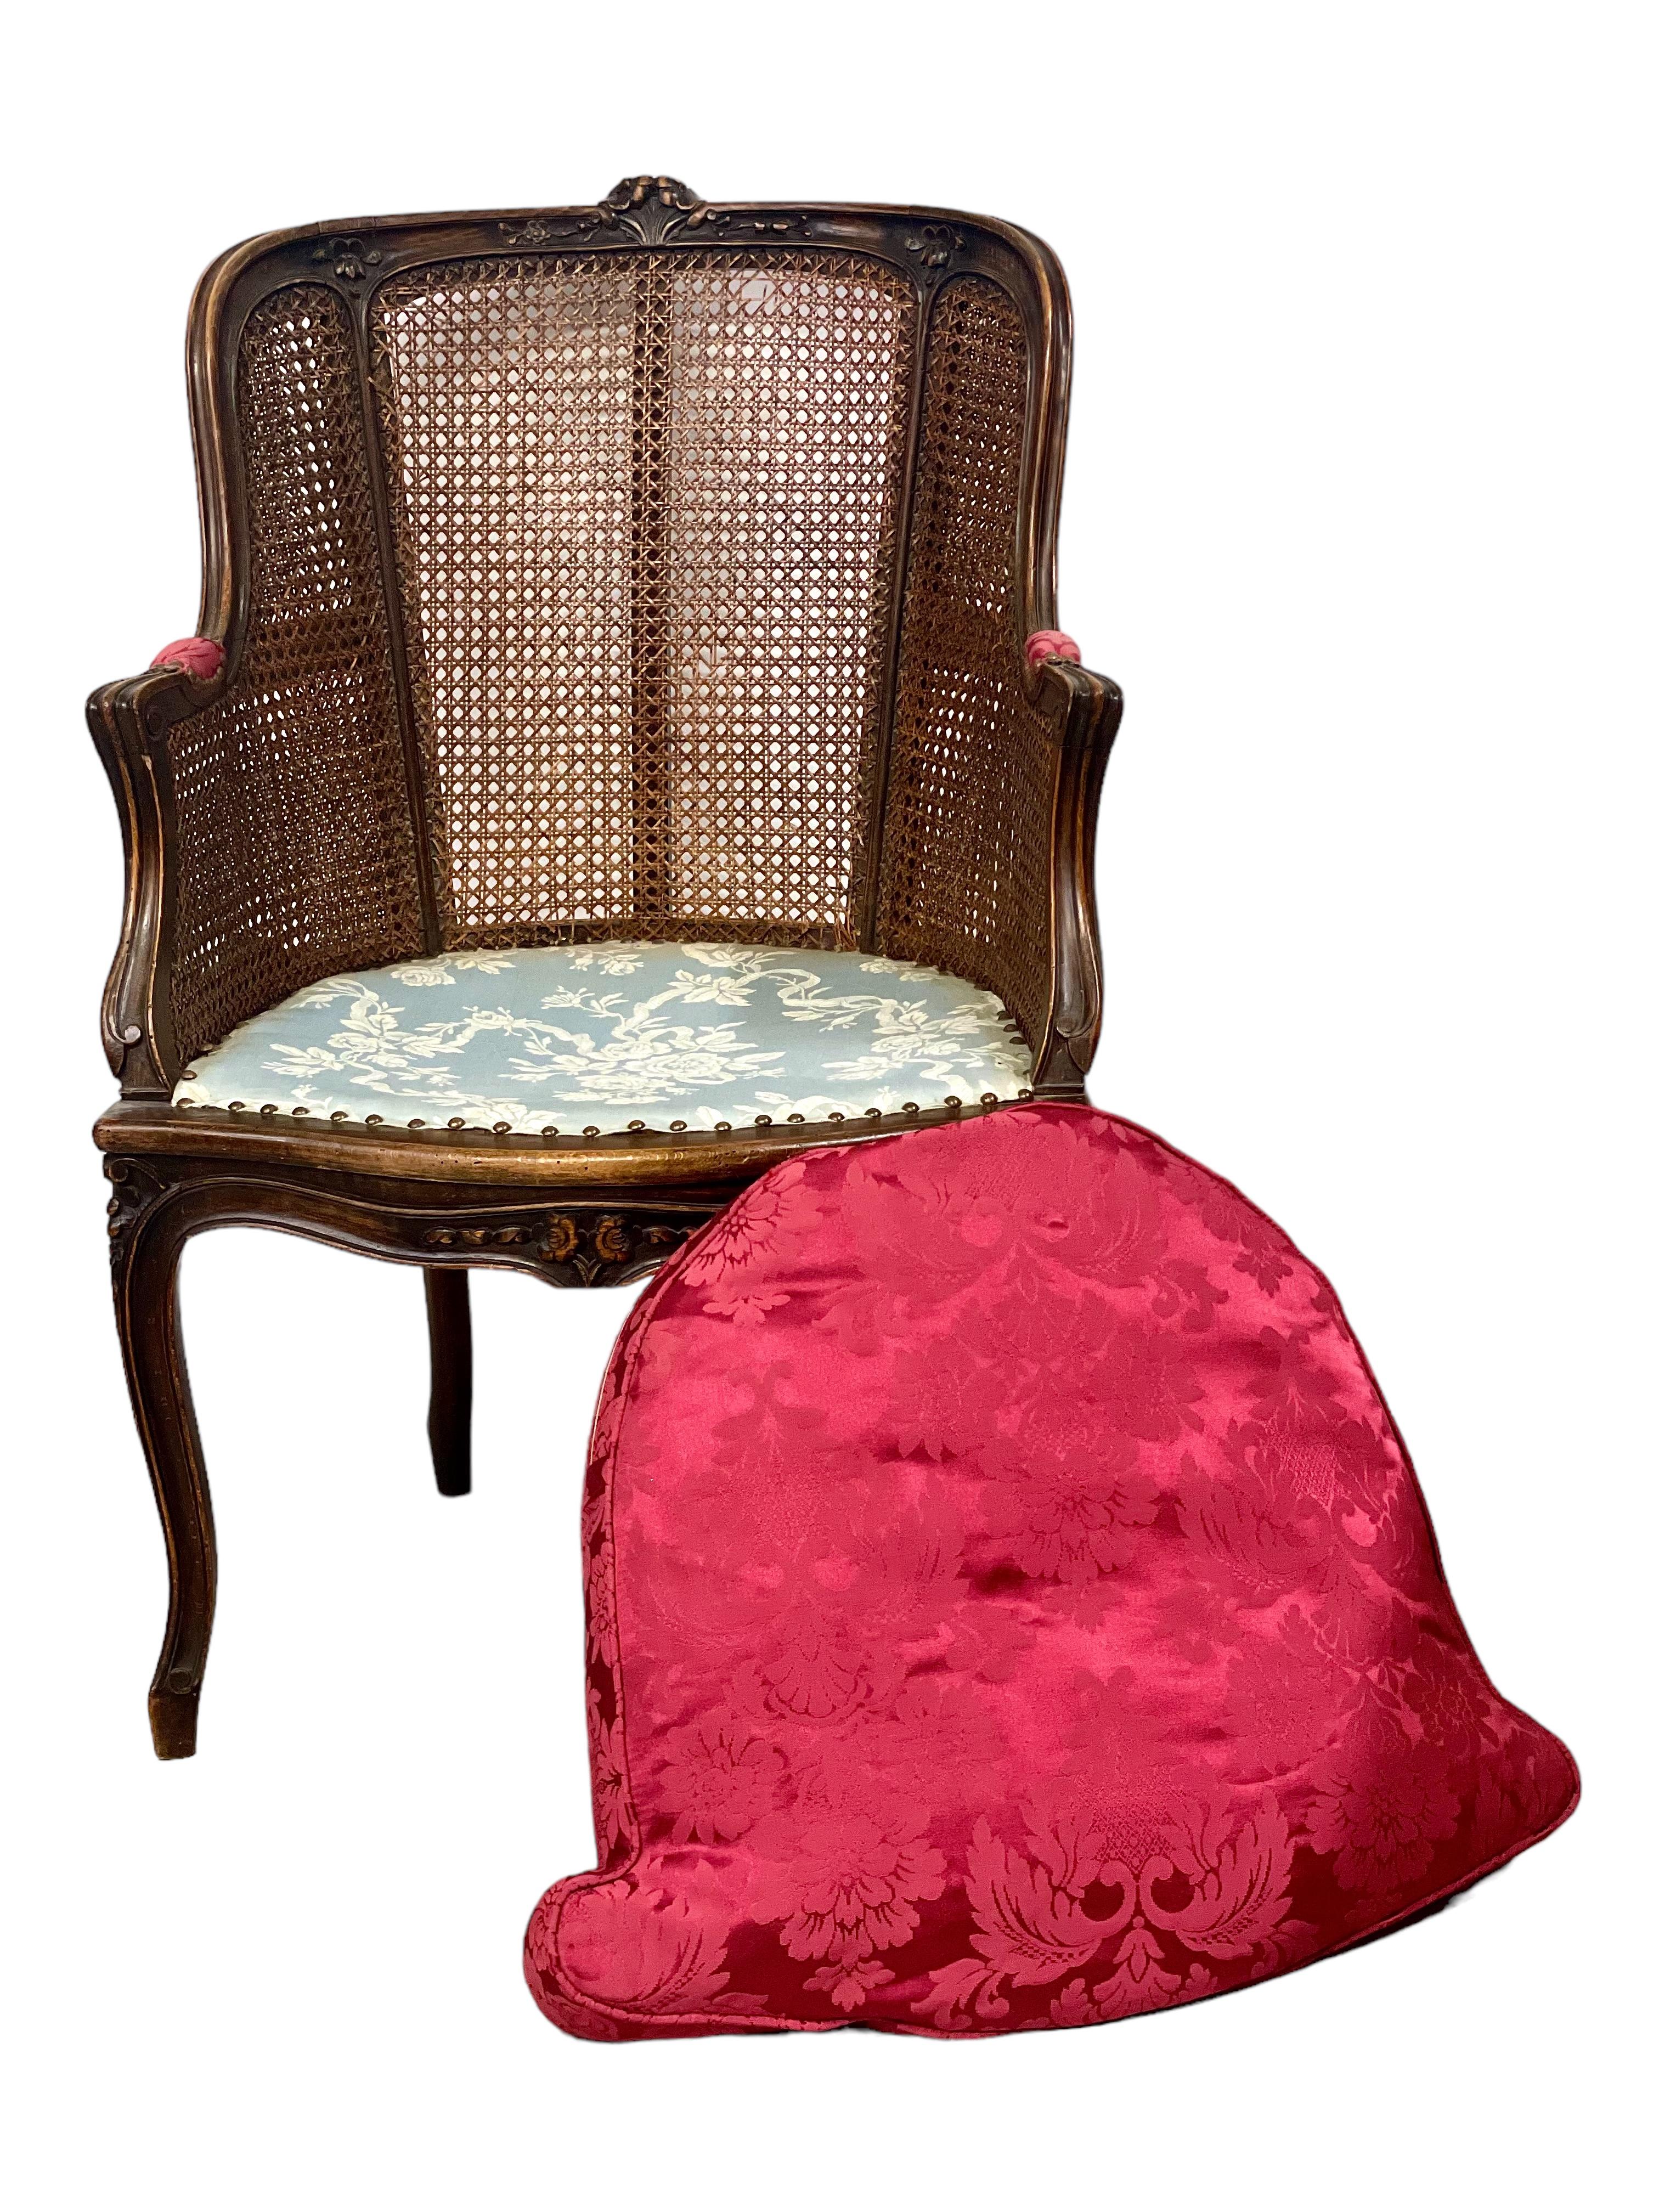 Élégant fauteuil Bergère canné de style Louis XV en bois naturel, doté d'une assise généreuse et d'un coussin amovible en peluche cramoisie, tissé d'un exubérant motif floral. La traverse supérieure façonnée a été magnifiquement embellie par des